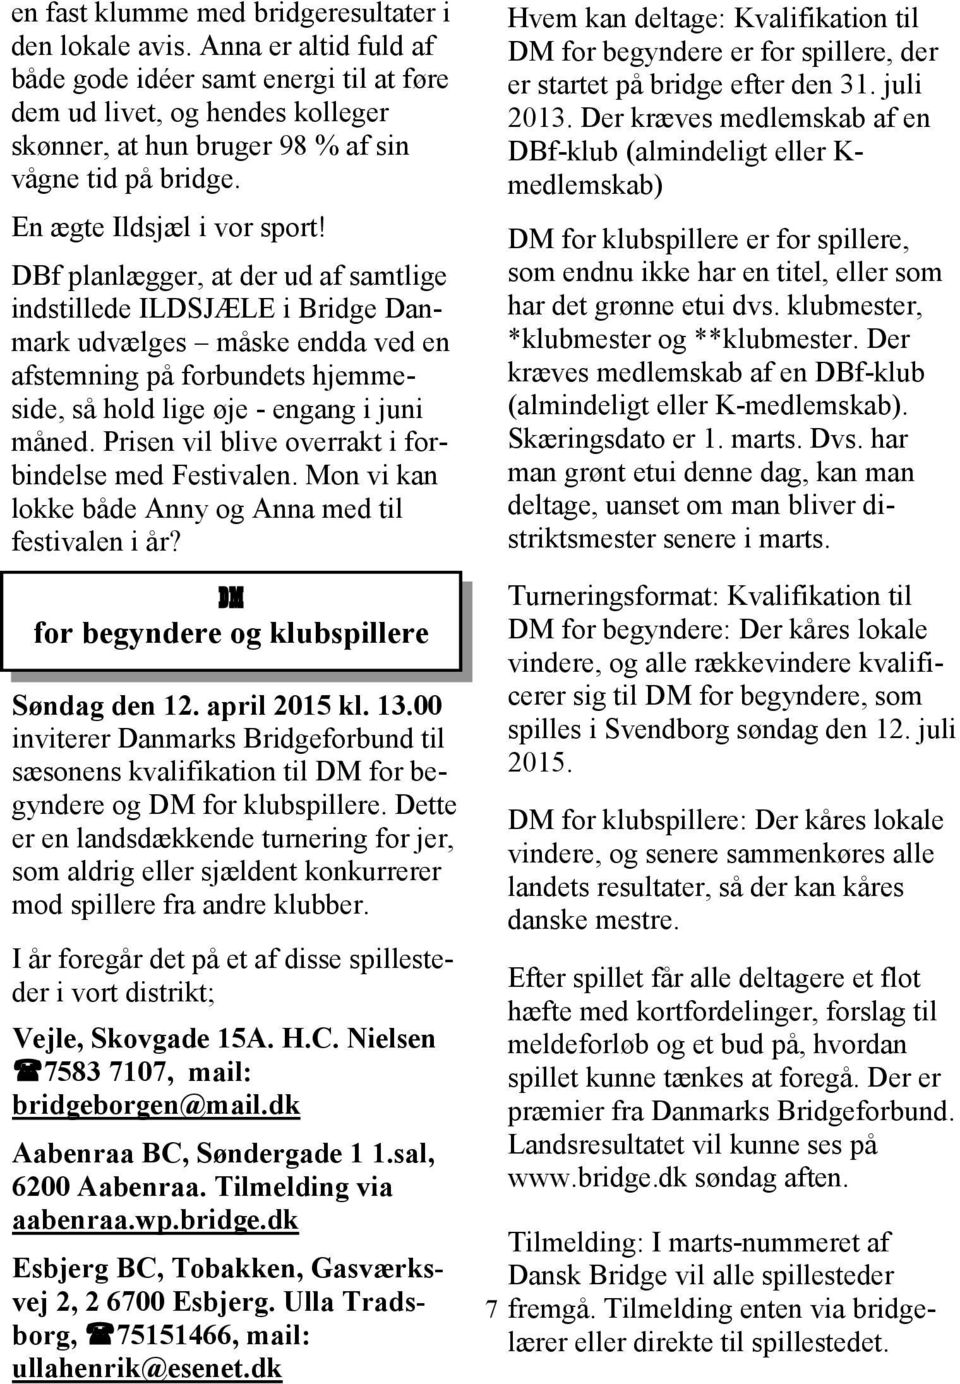 DBf planlægger, at der ud af samtlige indstillede ILDSJÆLE i Bridge Danmark udvælges måske endda ved en afstemning på forbundets hjemmeside, så hold lige øje - engang i juni måned.